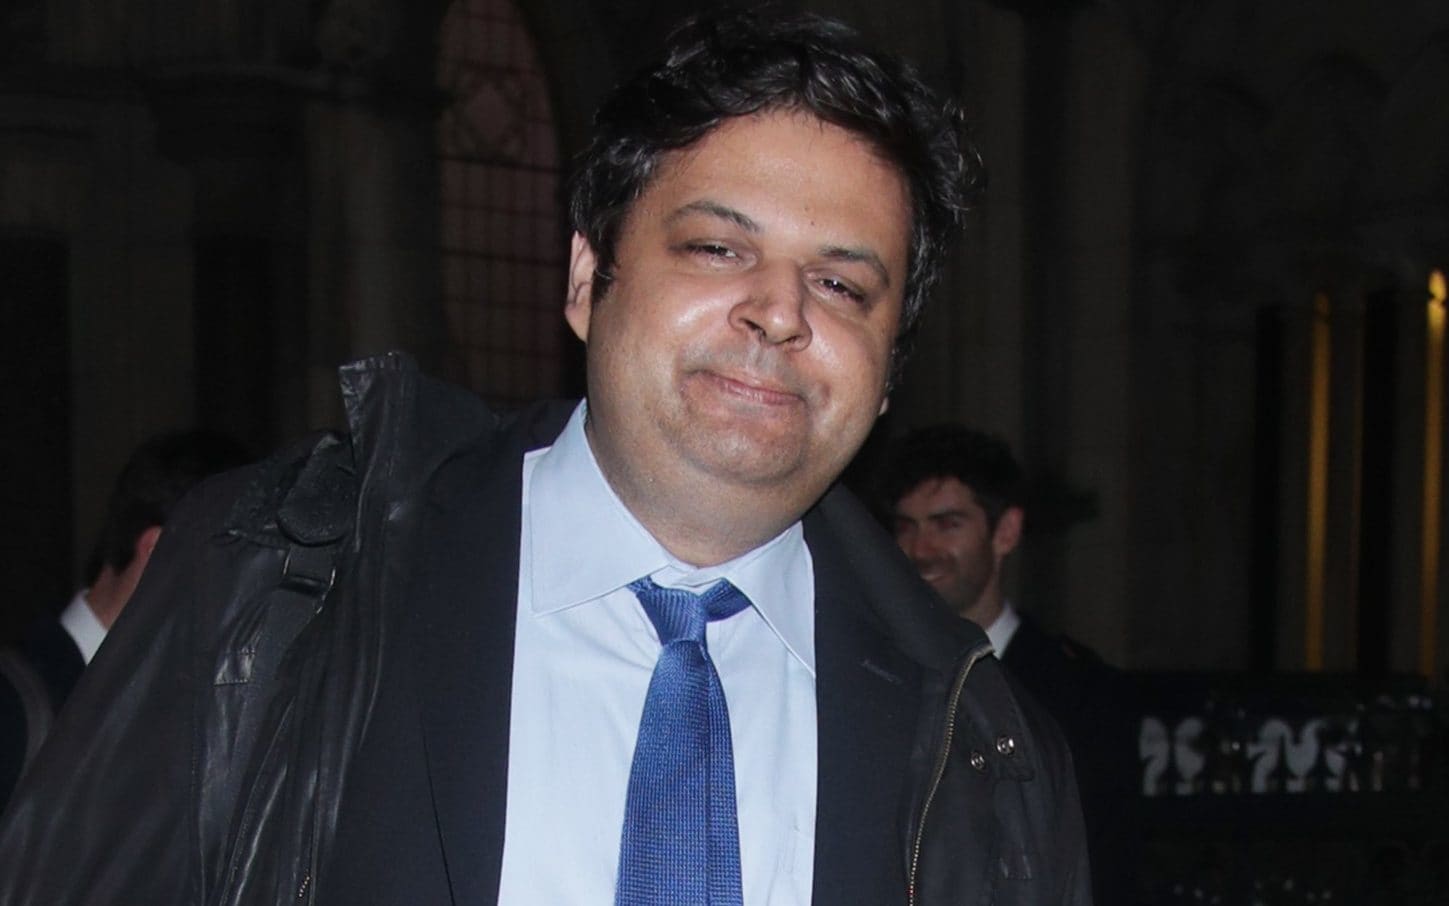 Faiz Siddiqui is suing Oxford University for £1m